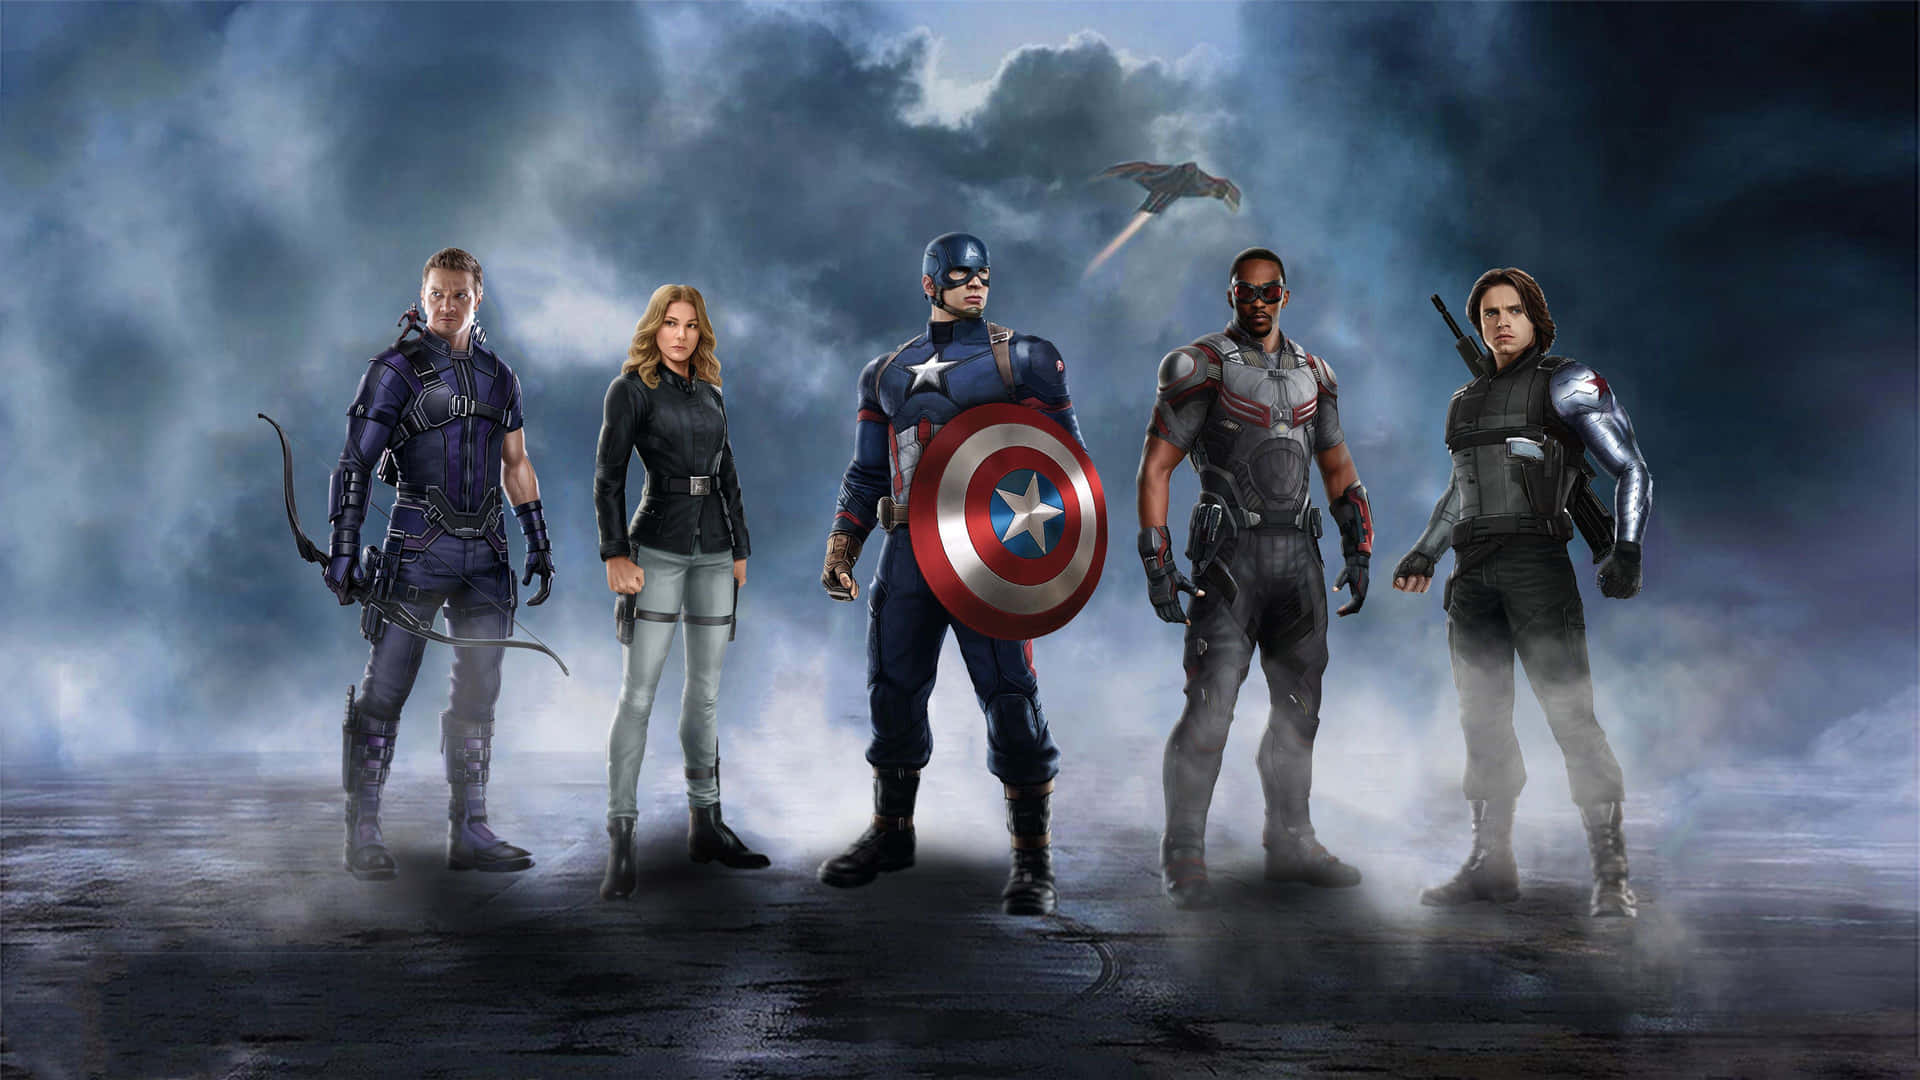 Muestratu Espíritu Patriótico En Tu Escritorio Con Esta Foto De Captain America. Fondo de pantalla